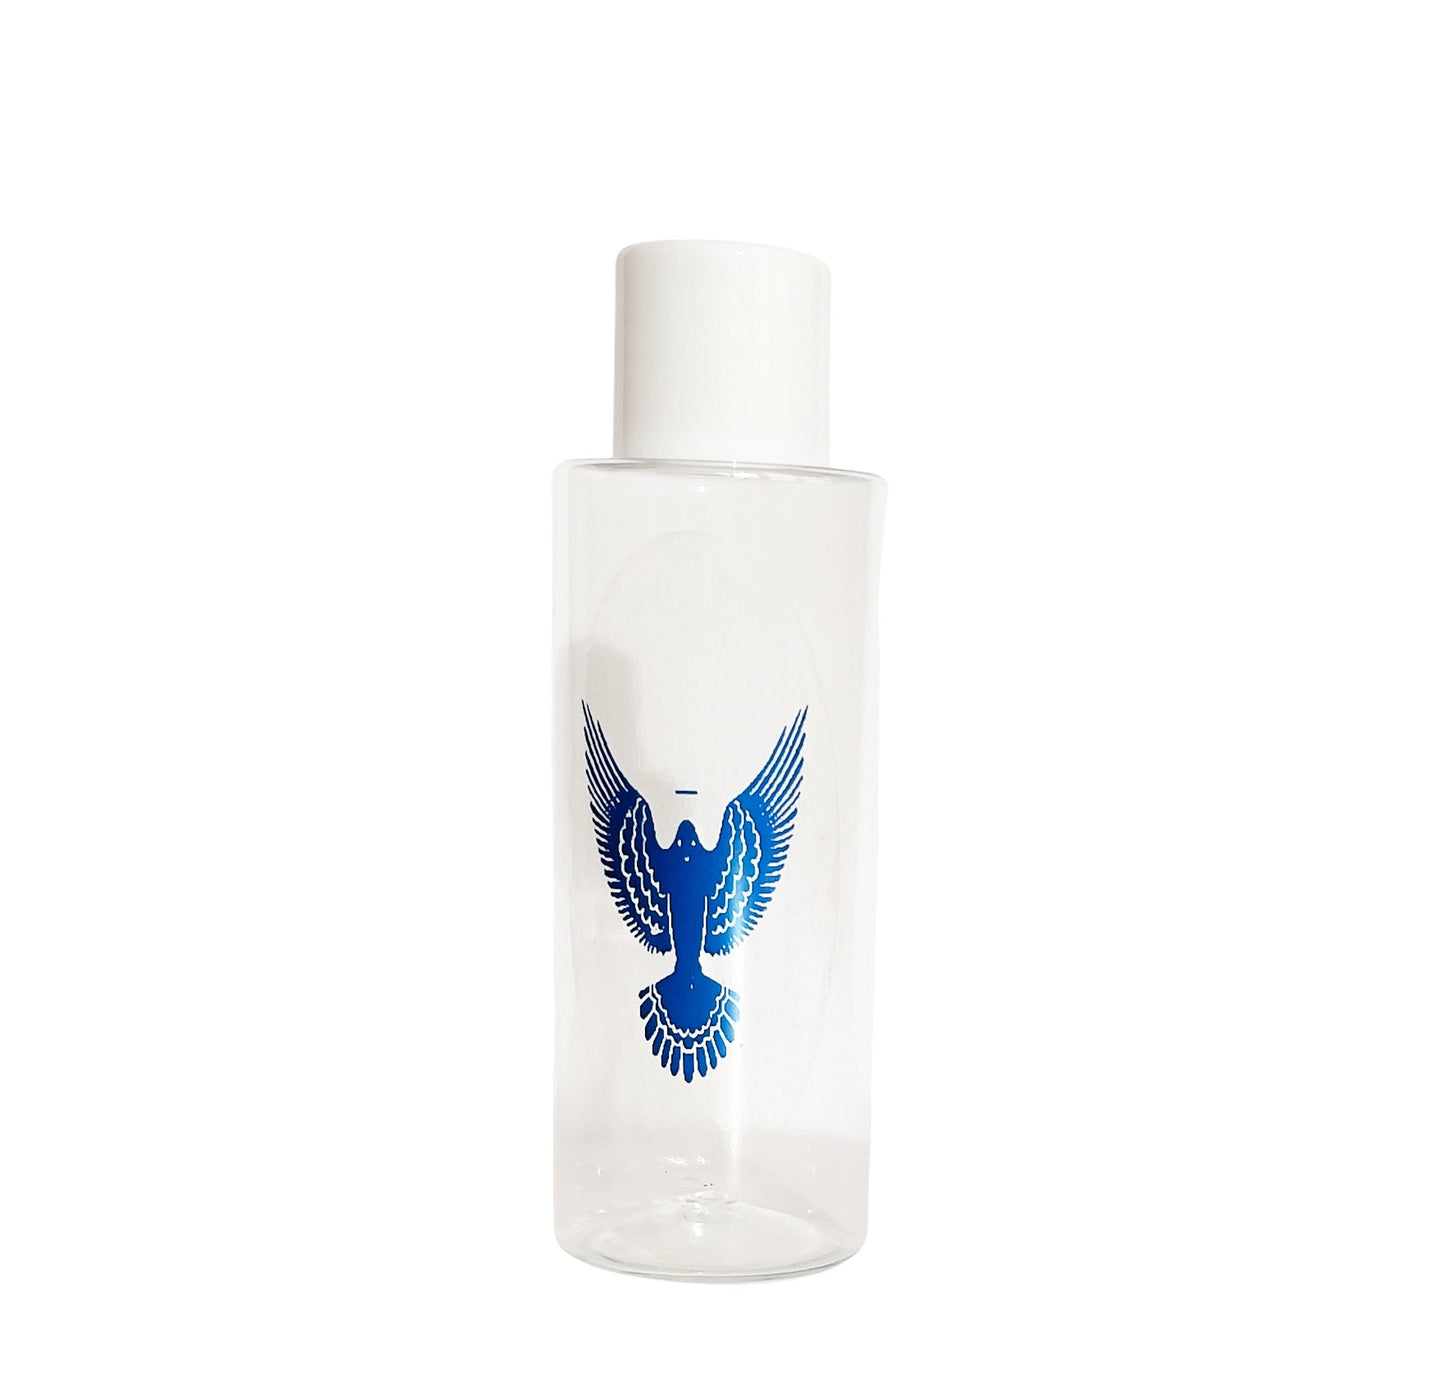 Bottigliette acqua santa con adesivo (confezione 100 pz) – Lux Dei -  Vendita Articoli Religiosi